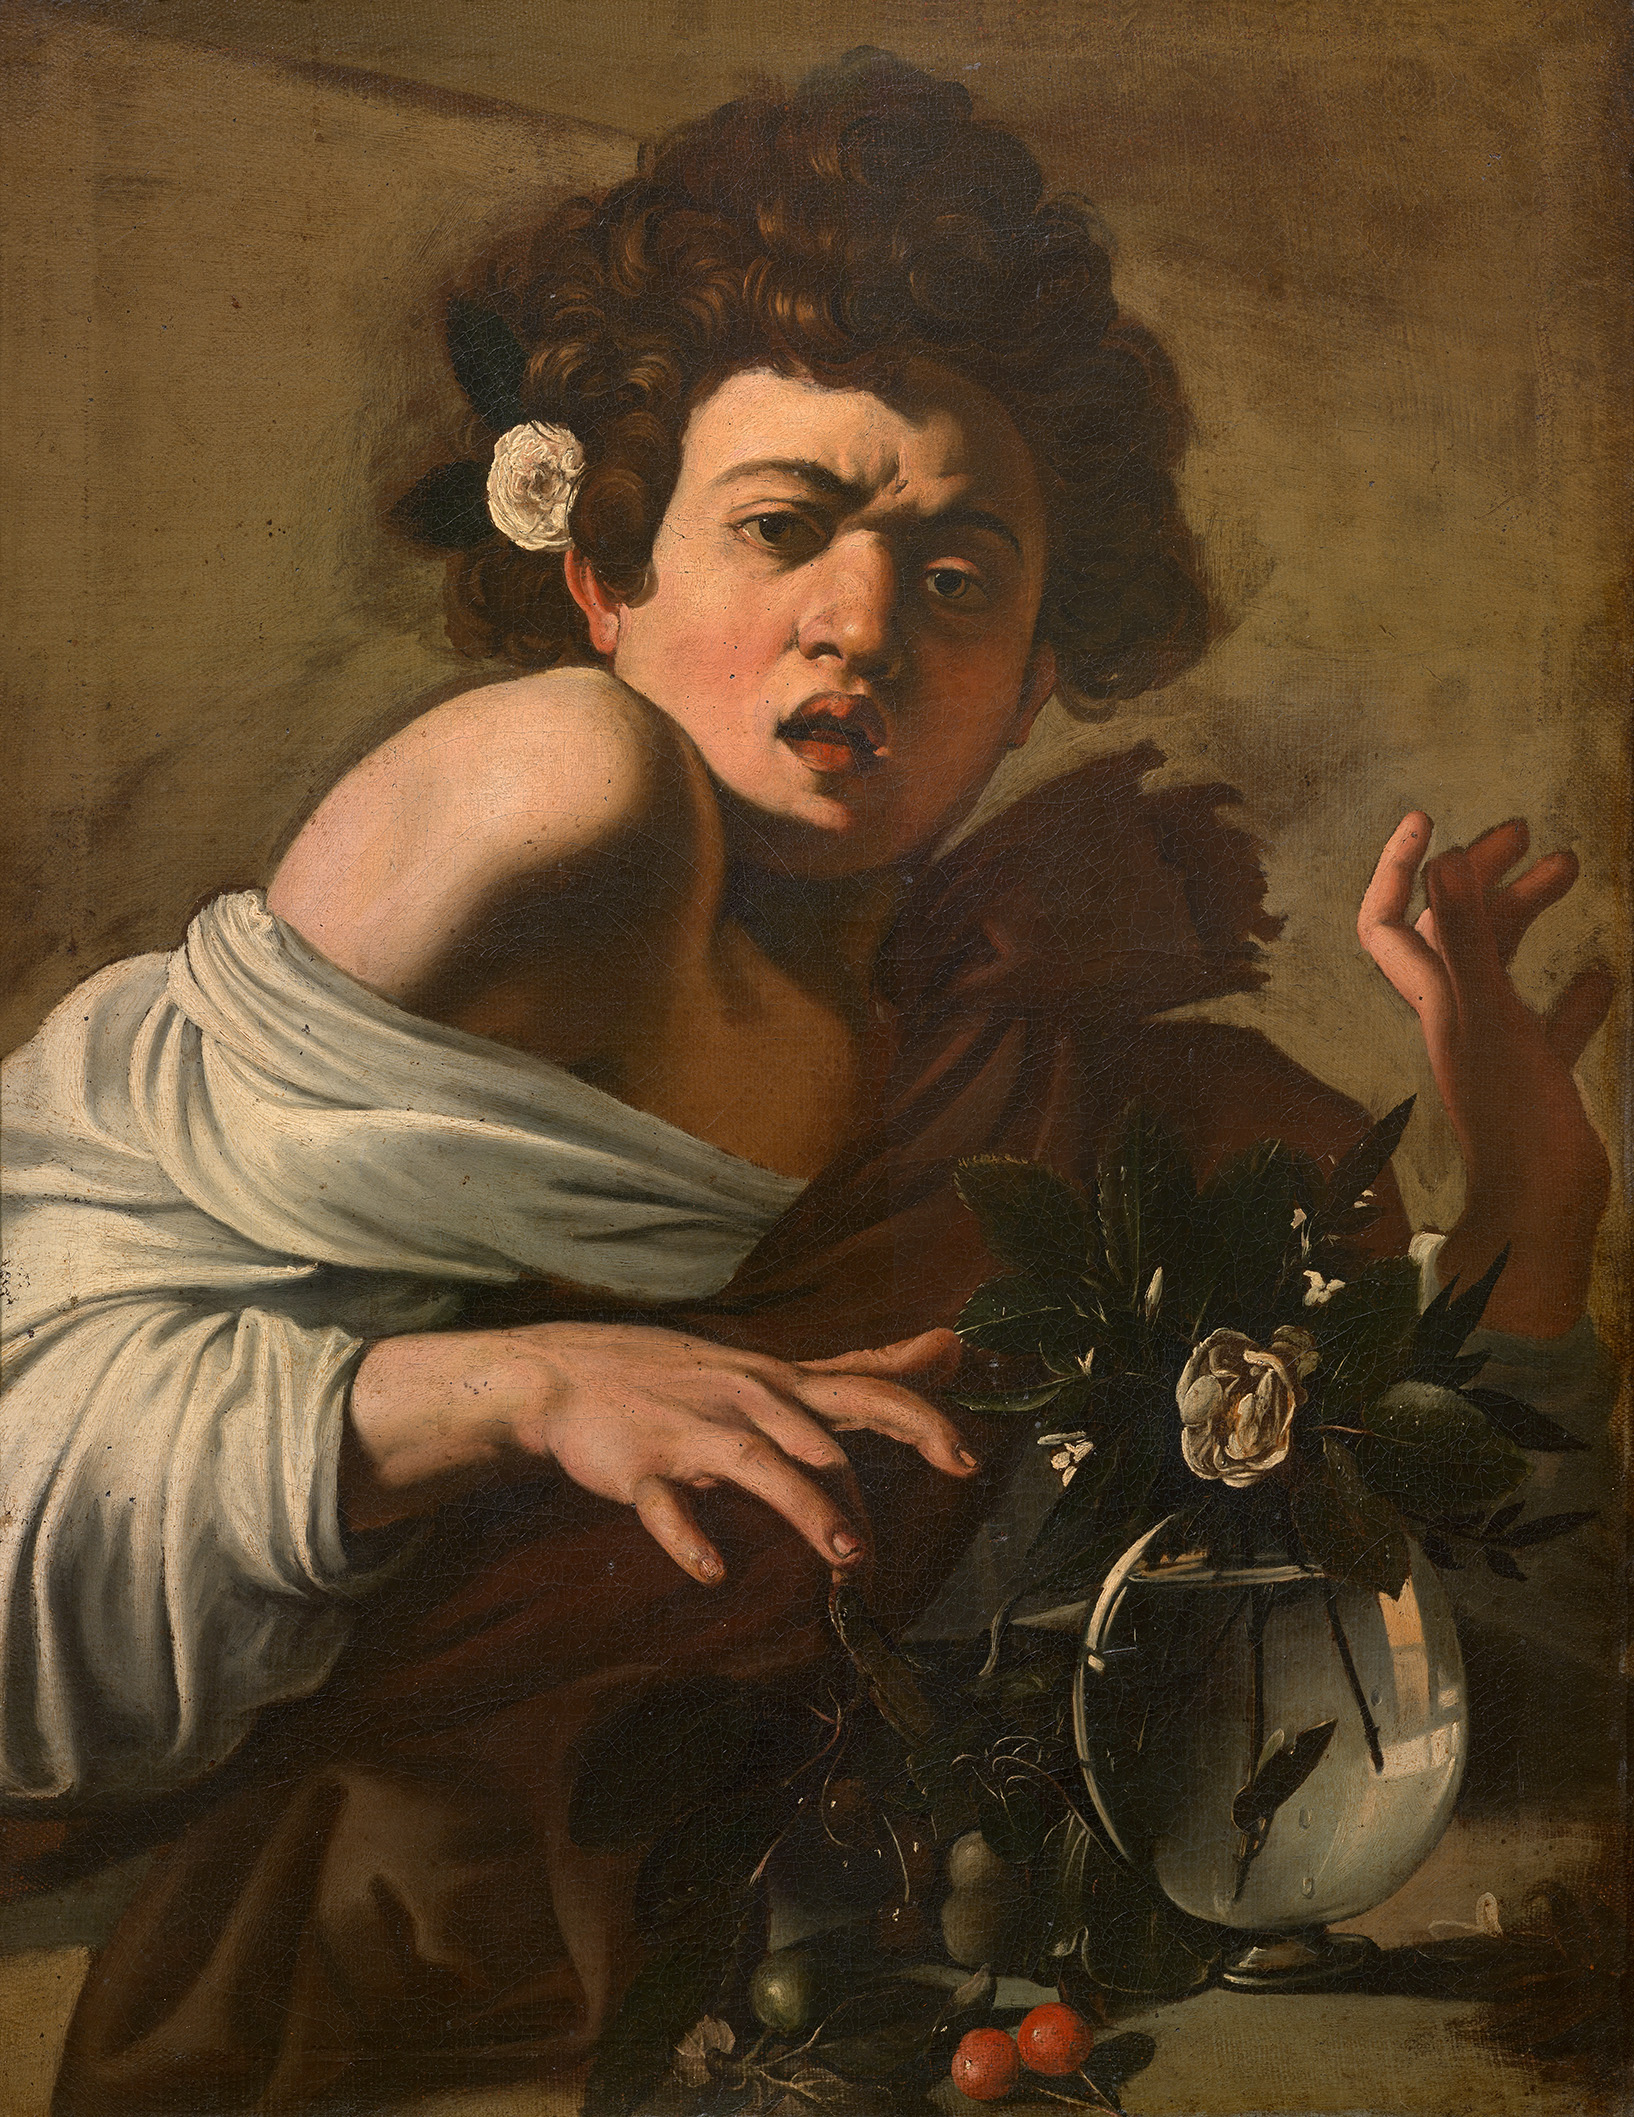 トカゲに噛まれた少年 by ミケランジェロ・メリージ カラヴァッジョ - c. 1597/98年 - 65.8 × 49.5 cm 